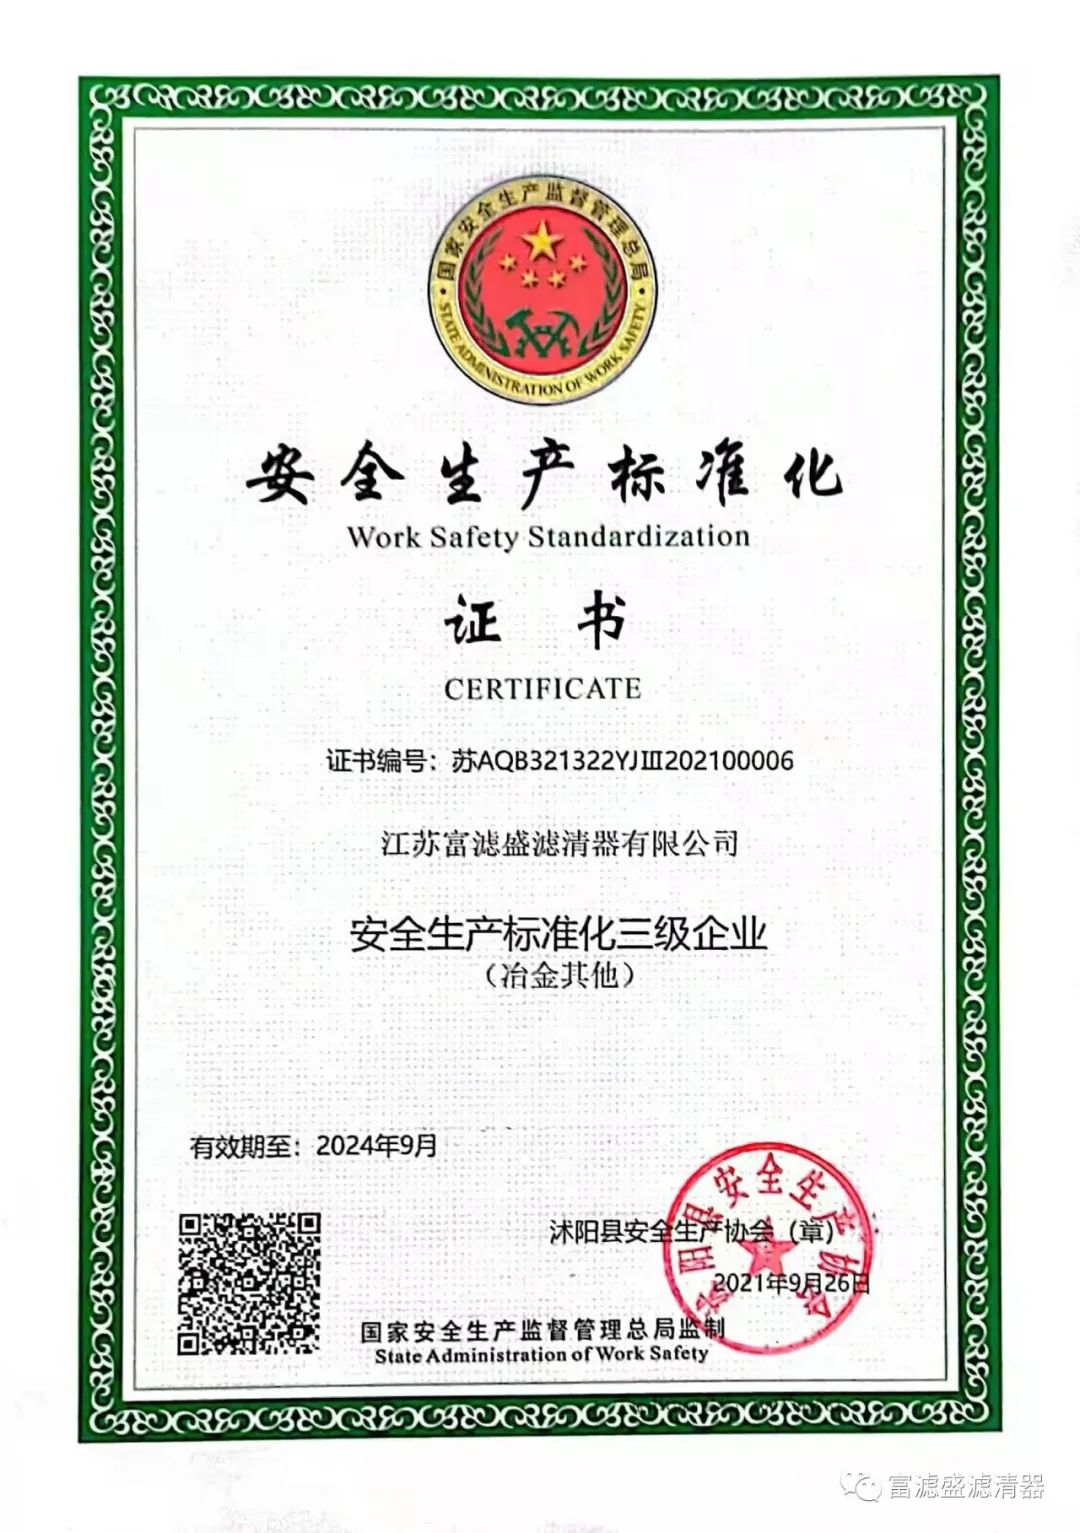 祝贺江苏富滤盛获得“安全生产标准化三级企业”证书